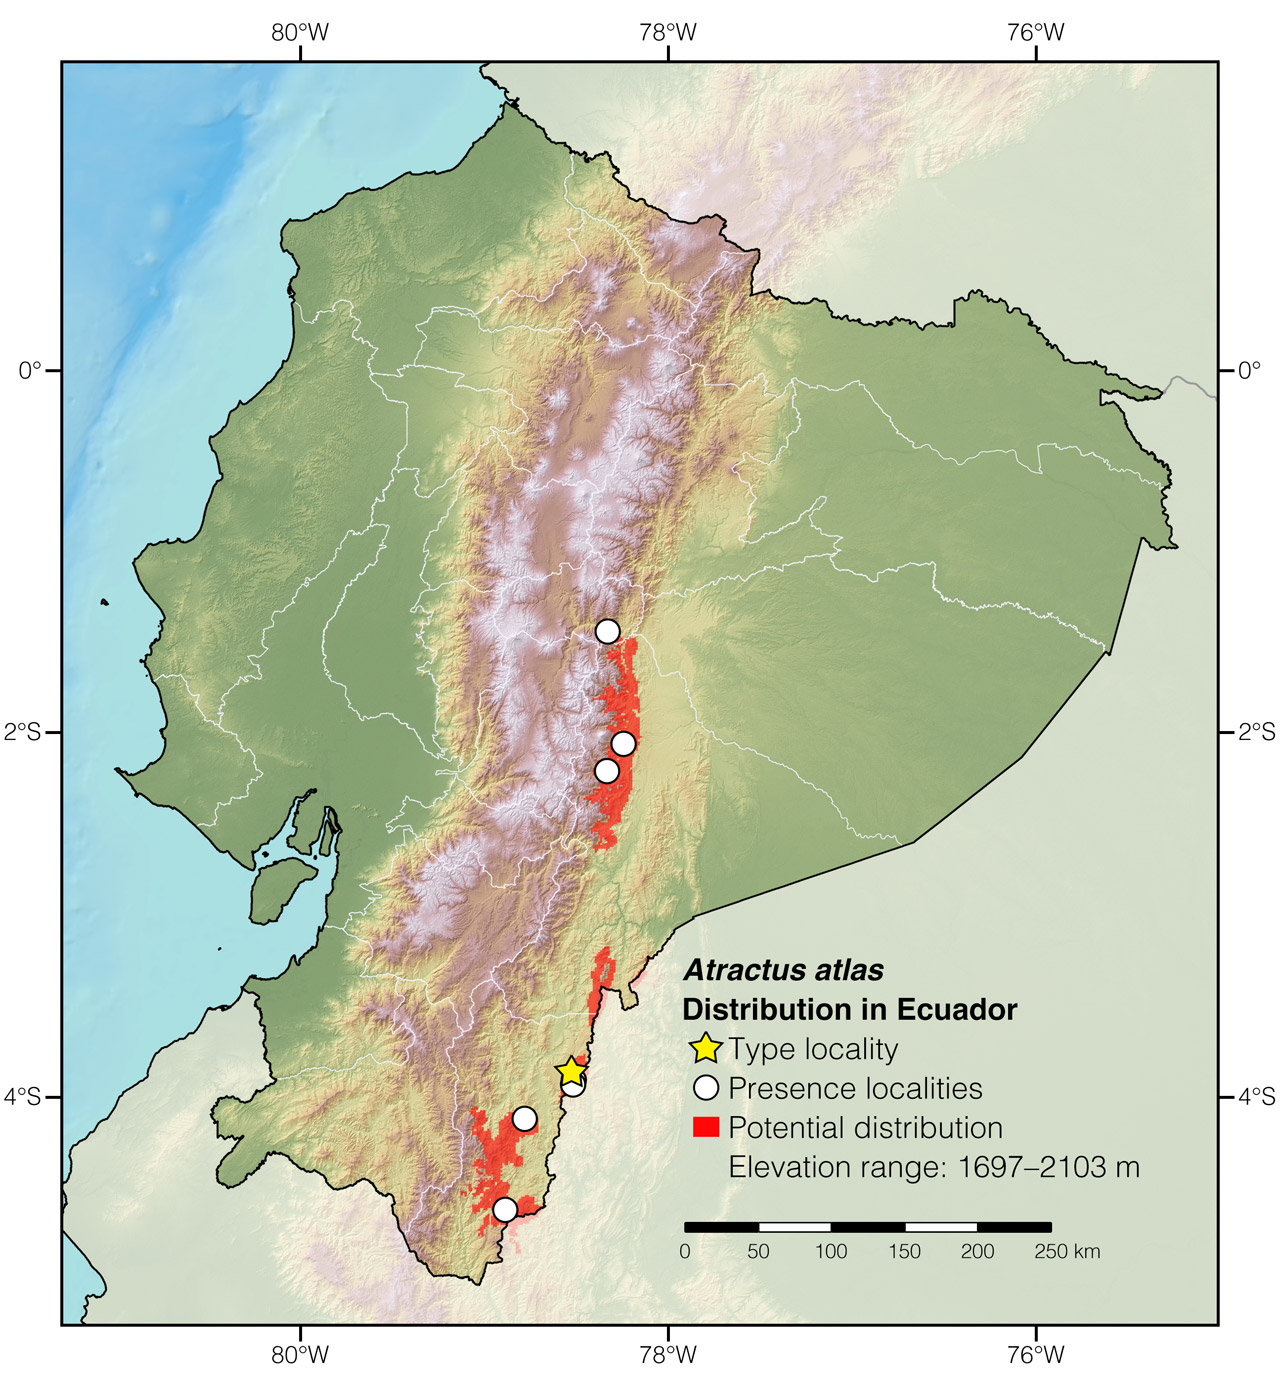 Distribution of Atractus atlas in Ecuador